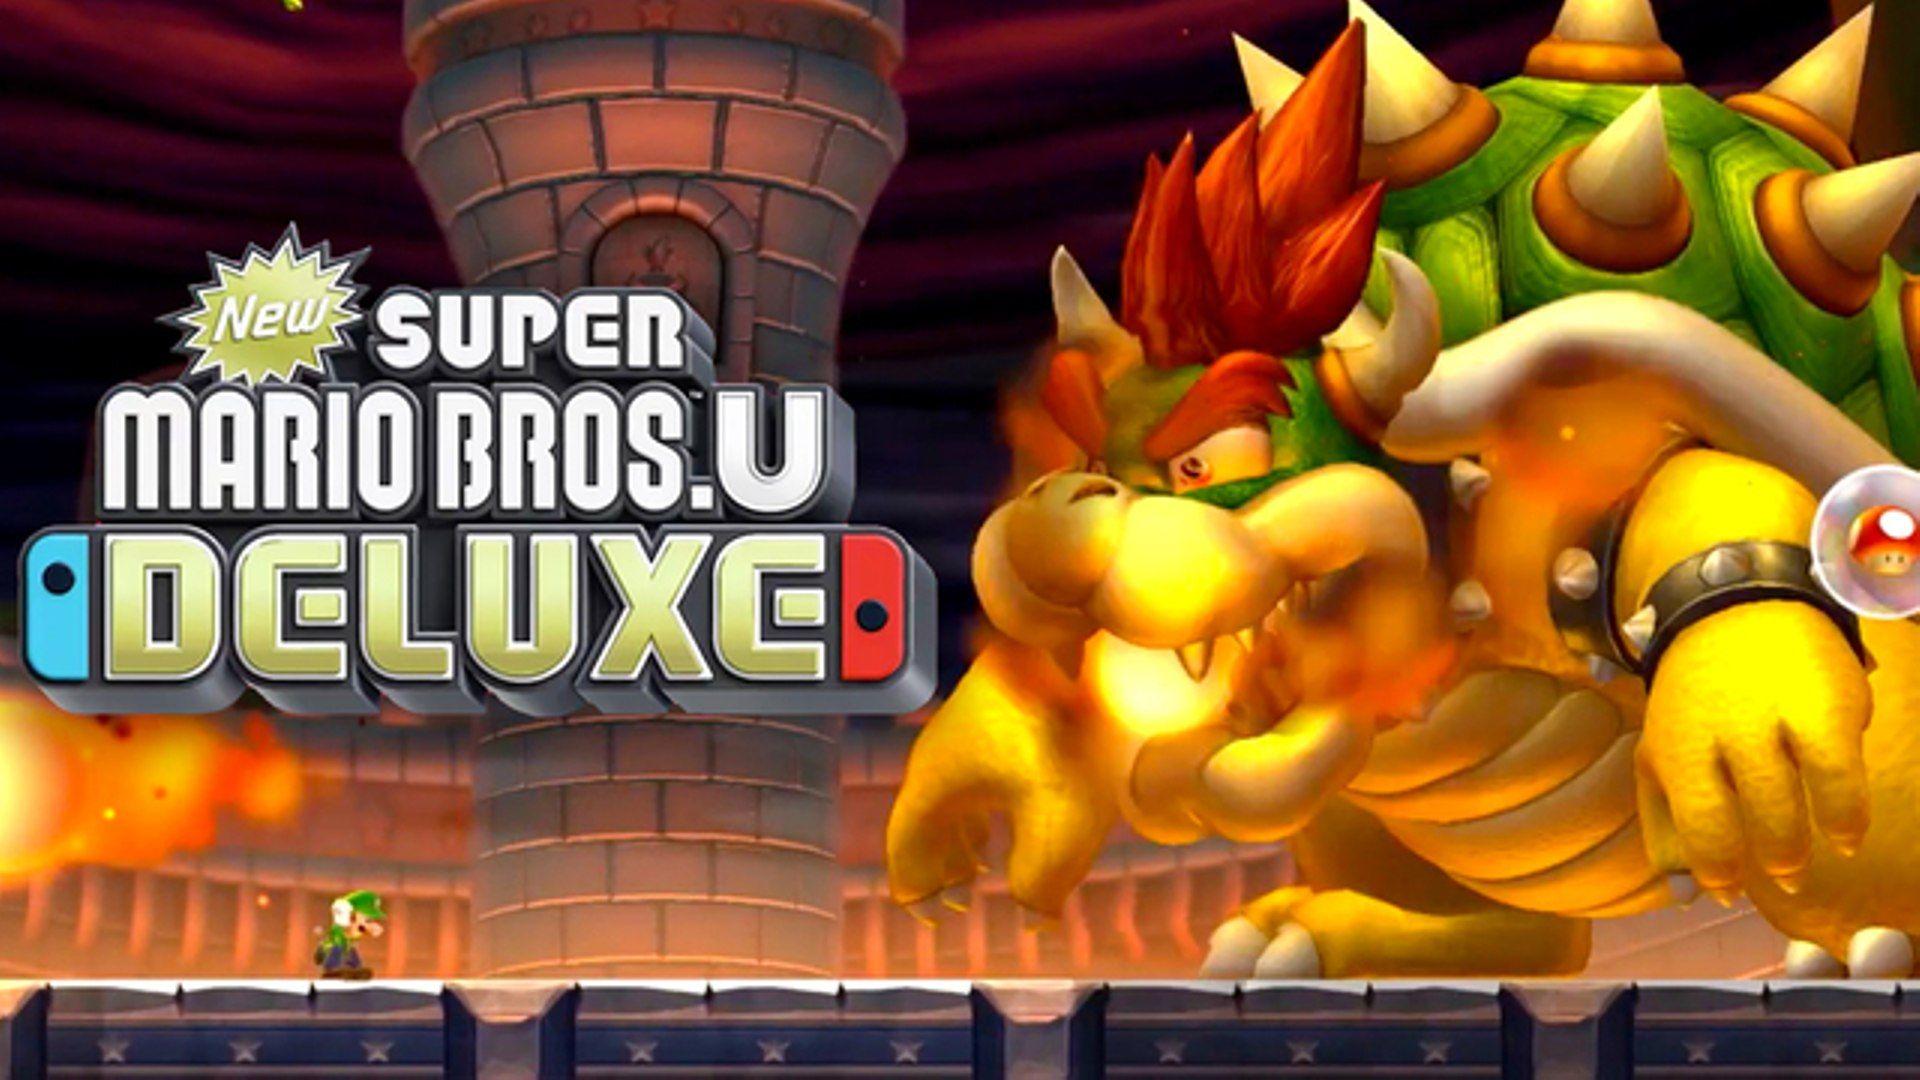 New Super Mario Bros. U Deluxe Announcement